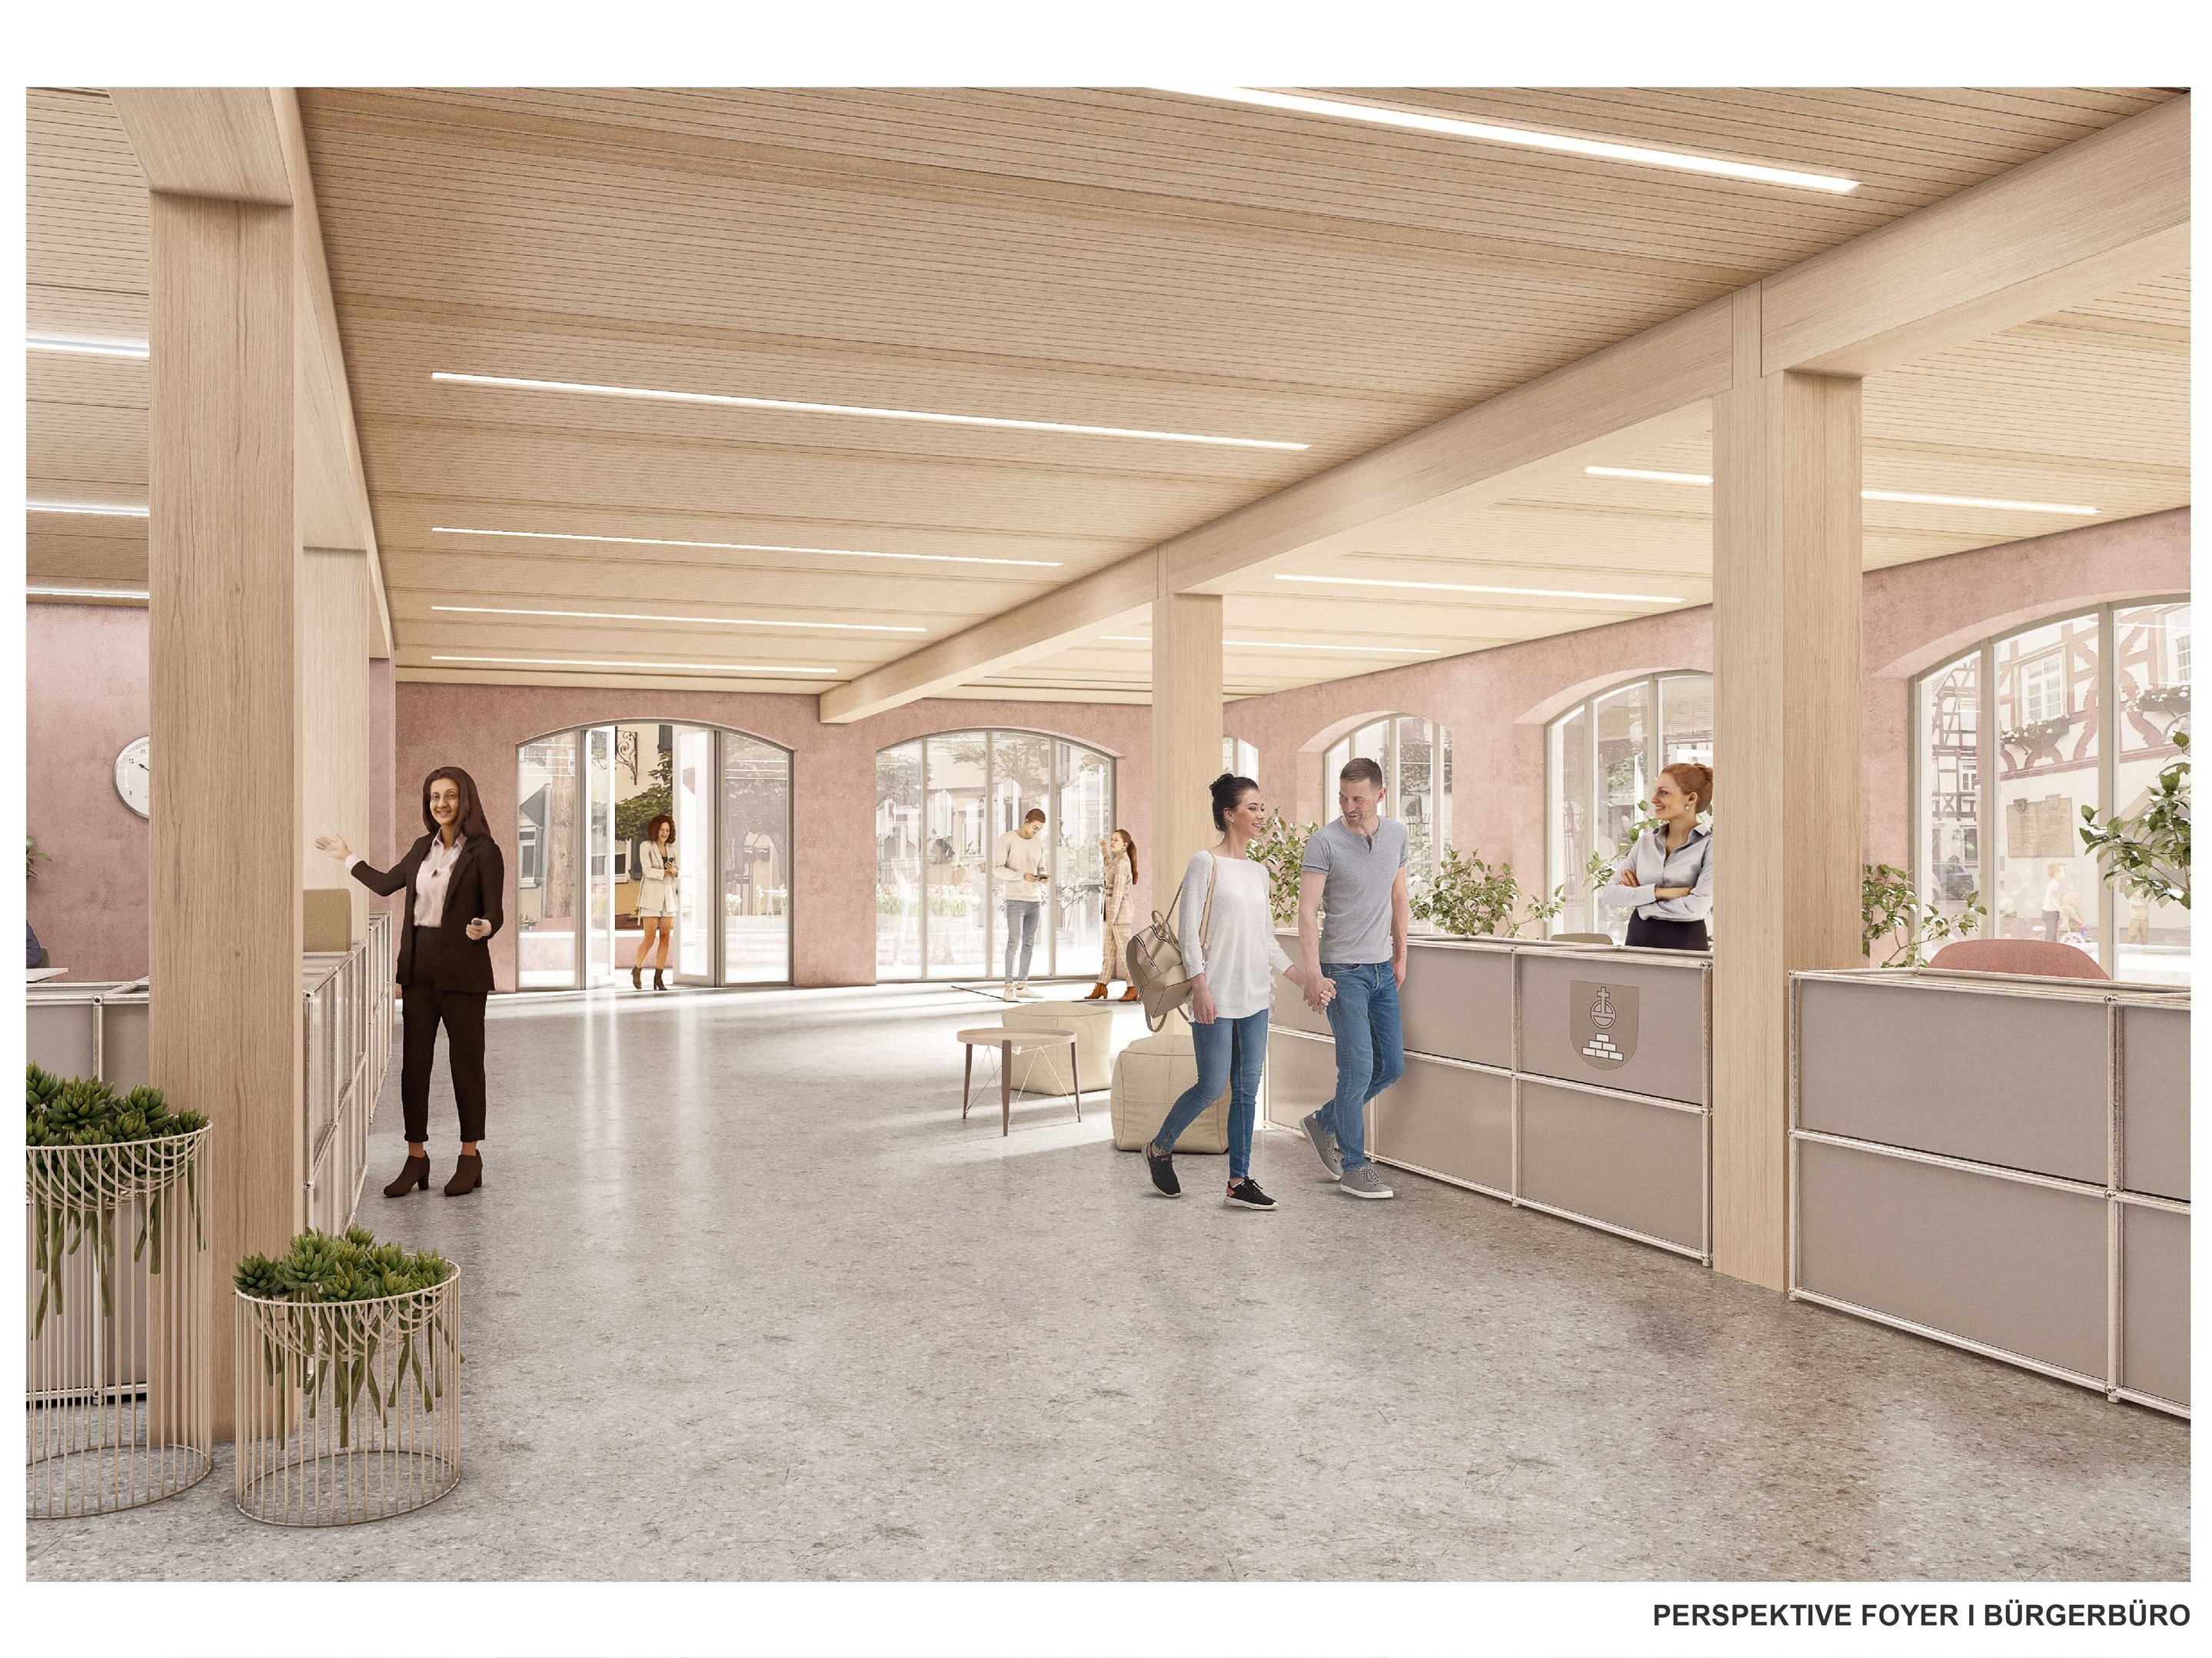 Modellbild des zukünftigen Foyer und Bürgerbüros des Rathauses